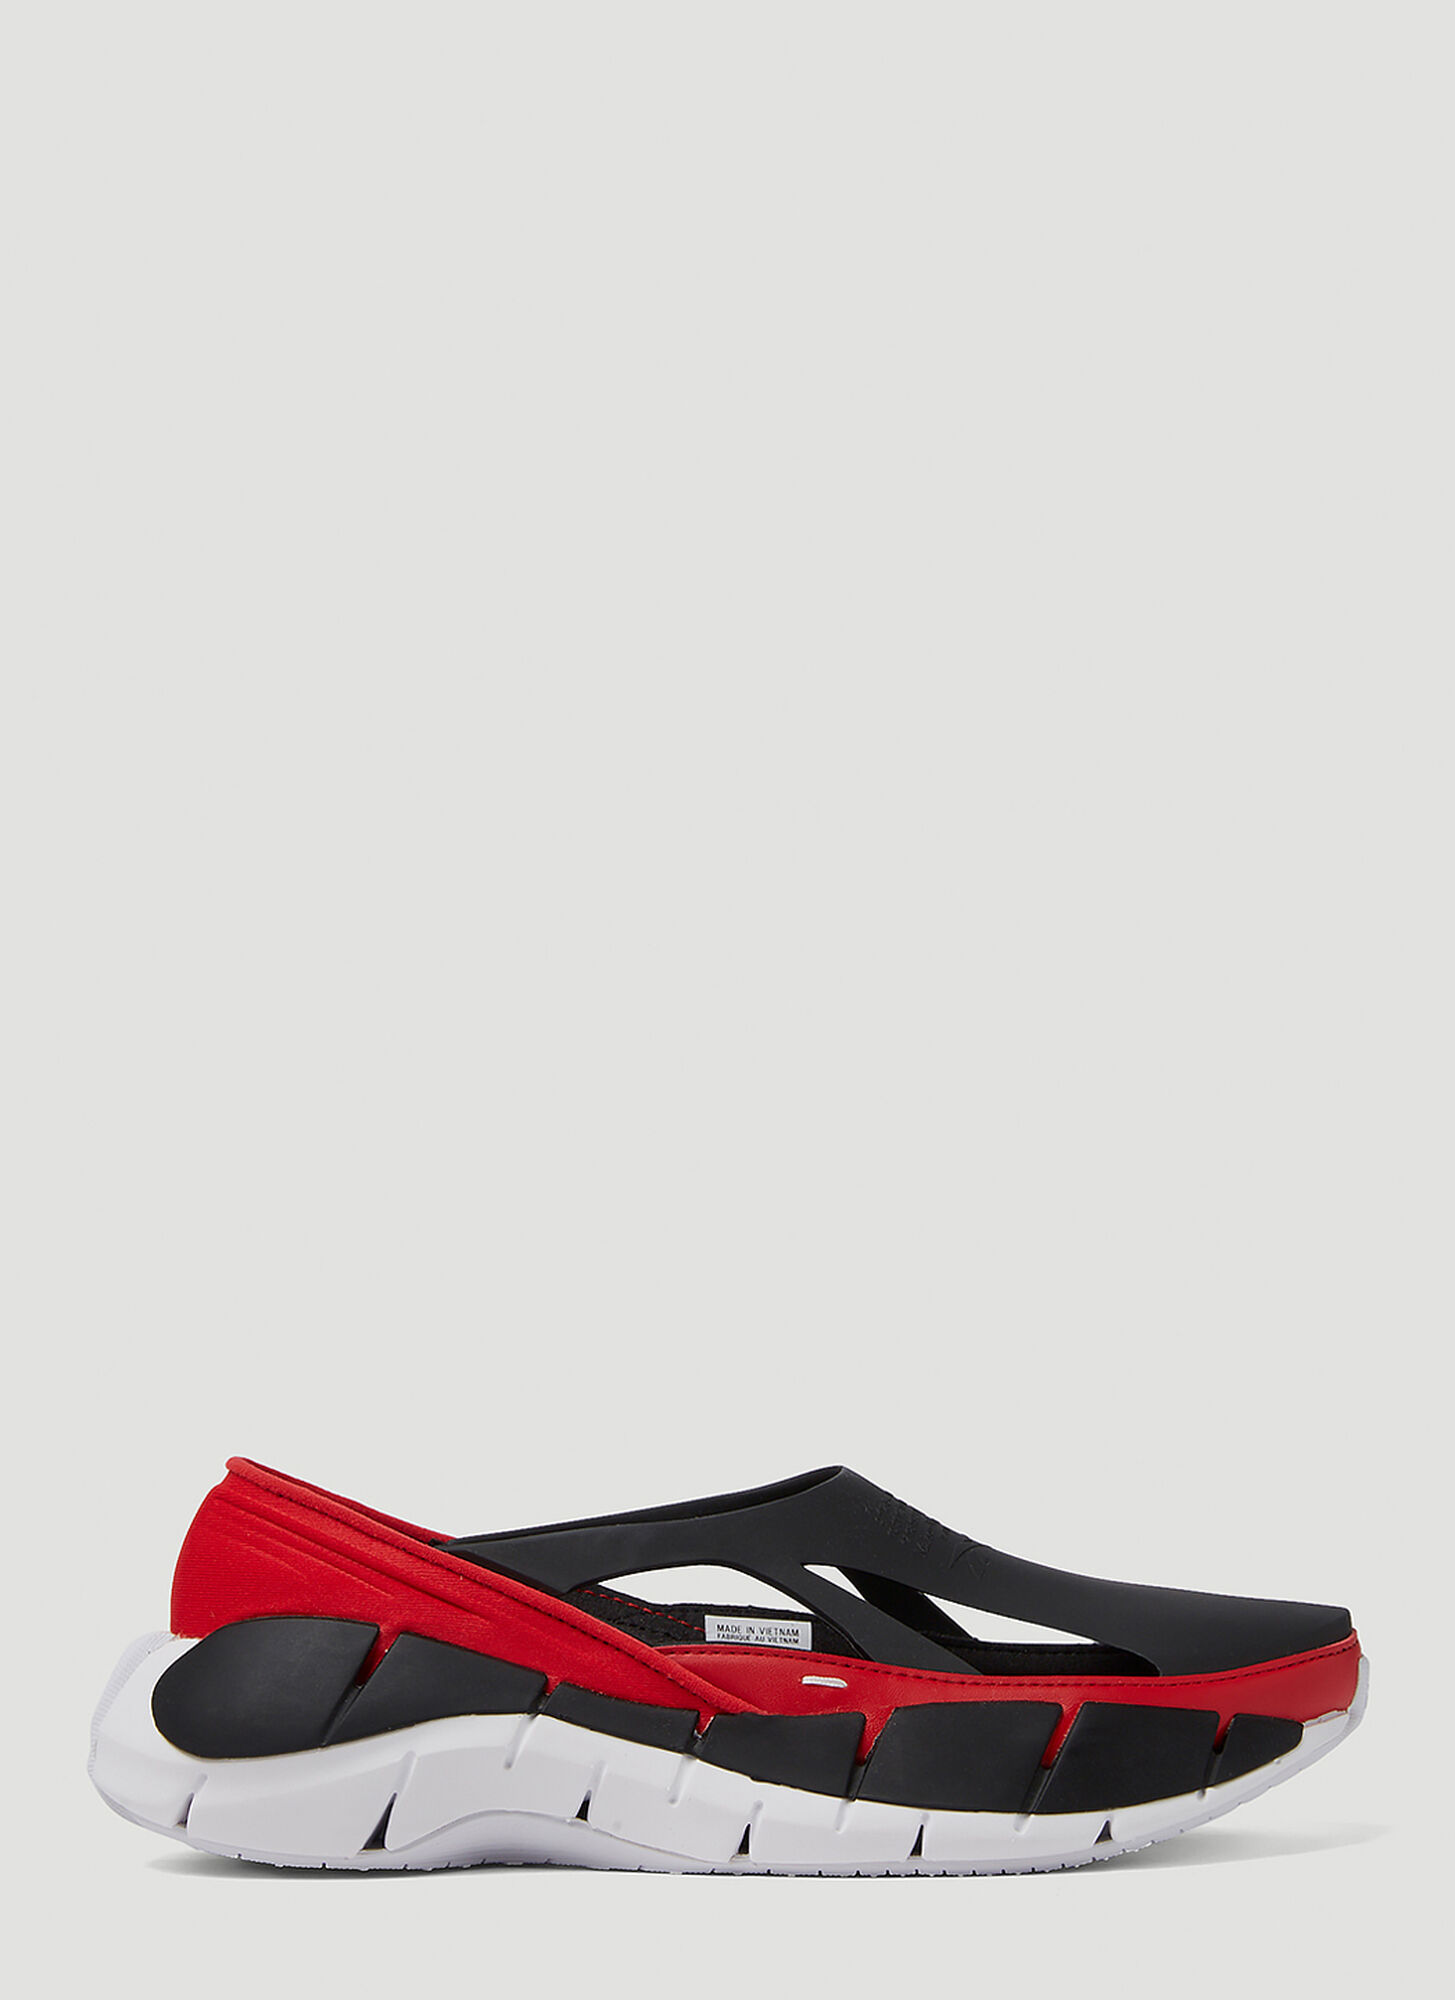 Maison Margiela X Reebok Tier 1 Croafer Sneakers In Red